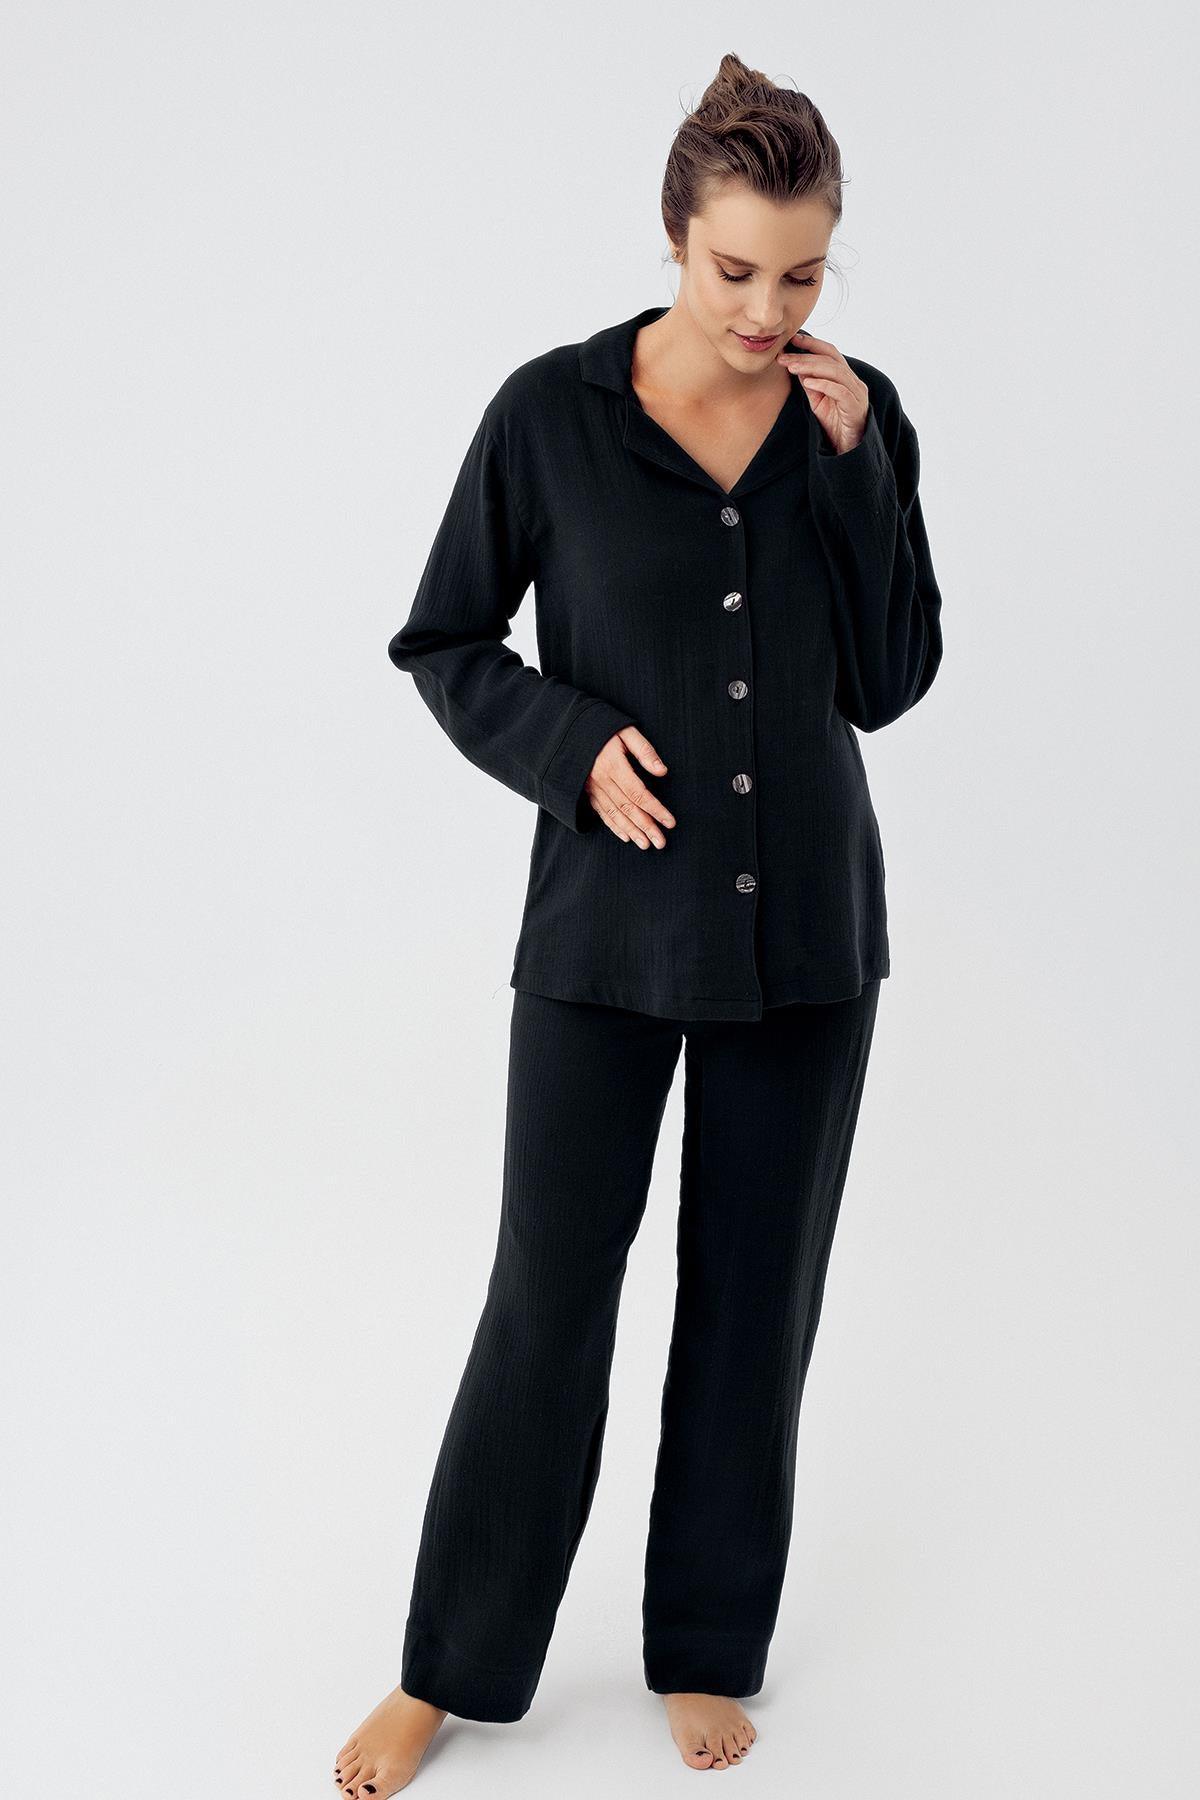 Çift Katlı Müslin Pamuklu Ayarlanabilir Yüksek Bel Düğmeli Gömlek Yaka Hamile Pijama Takım M210 - Artış Collection